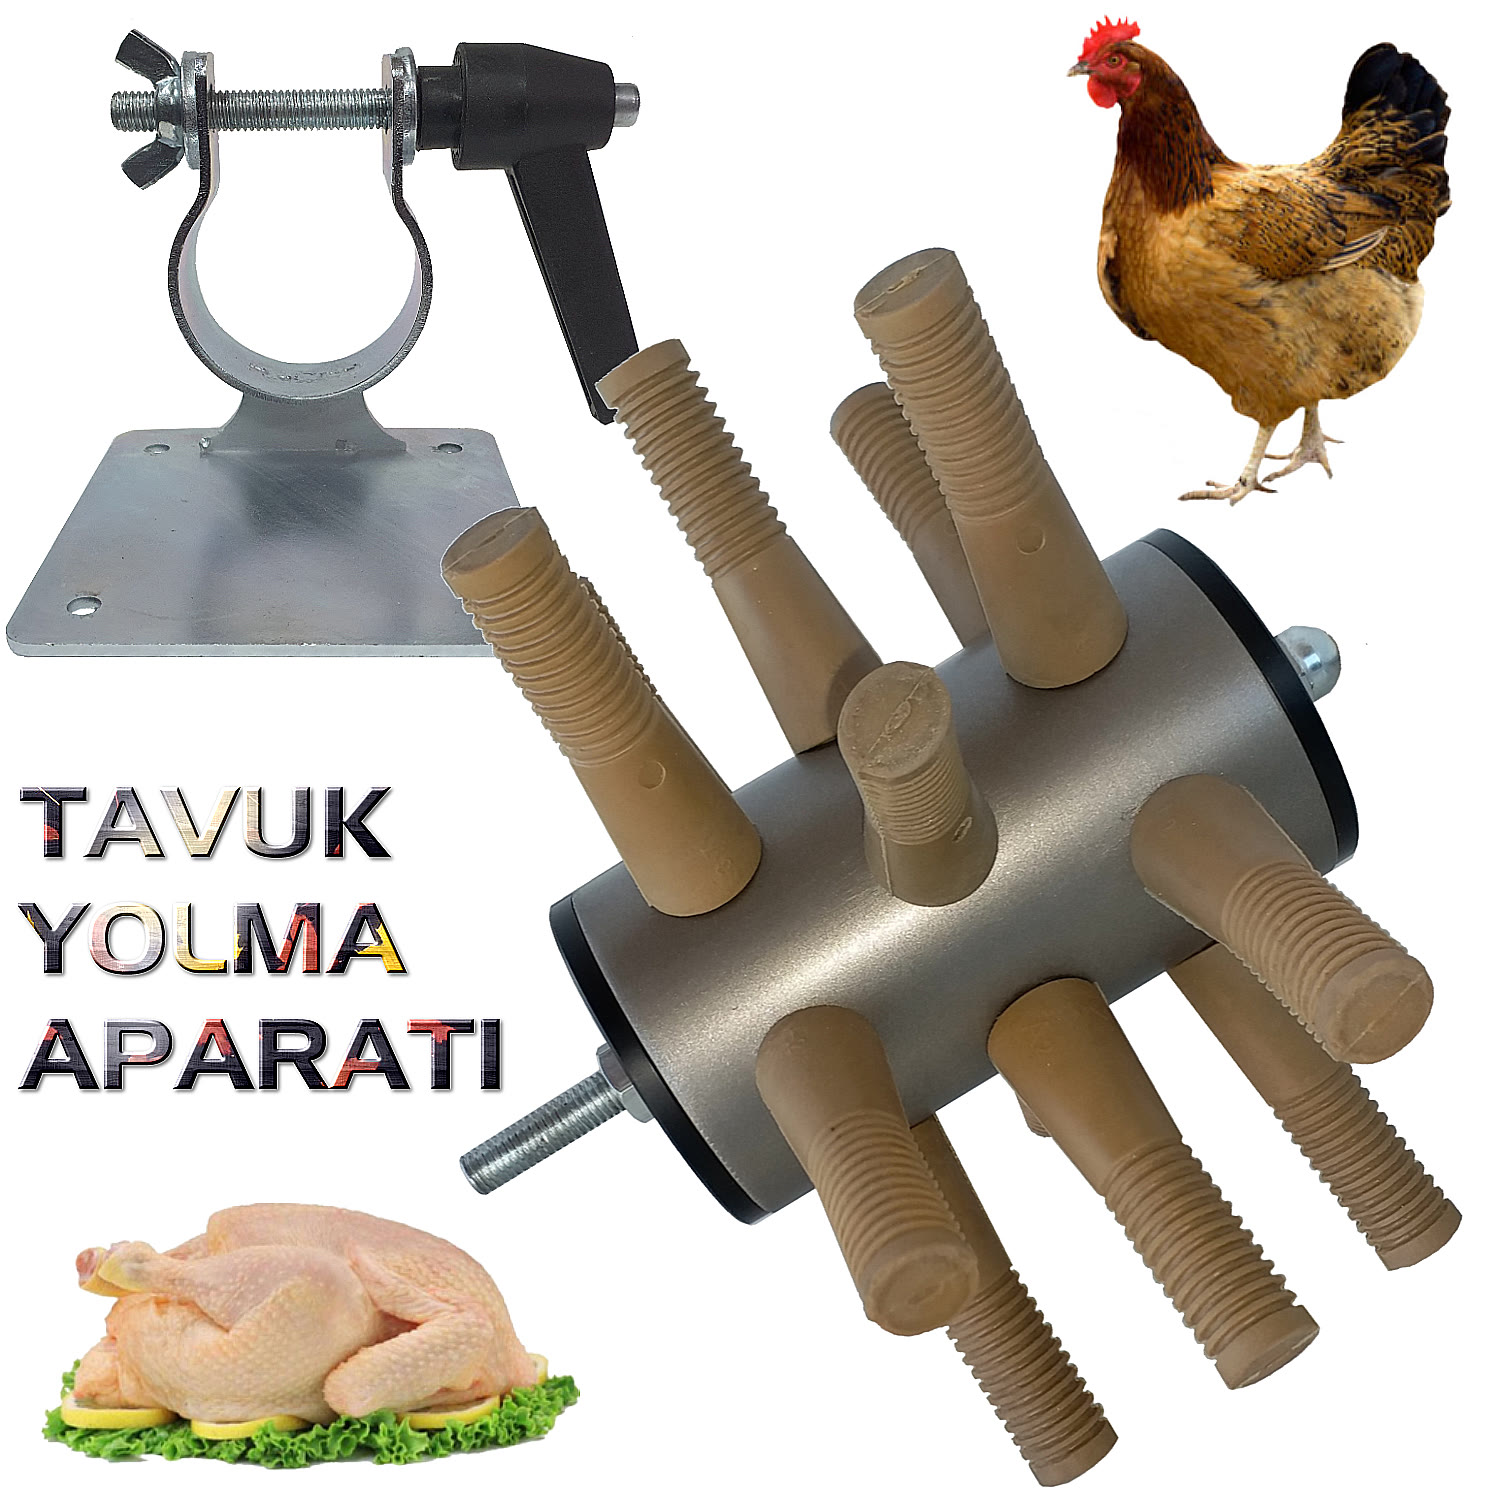 Tavuk Yolma Aparatı + Matkap Tutucu (2 Ürün)